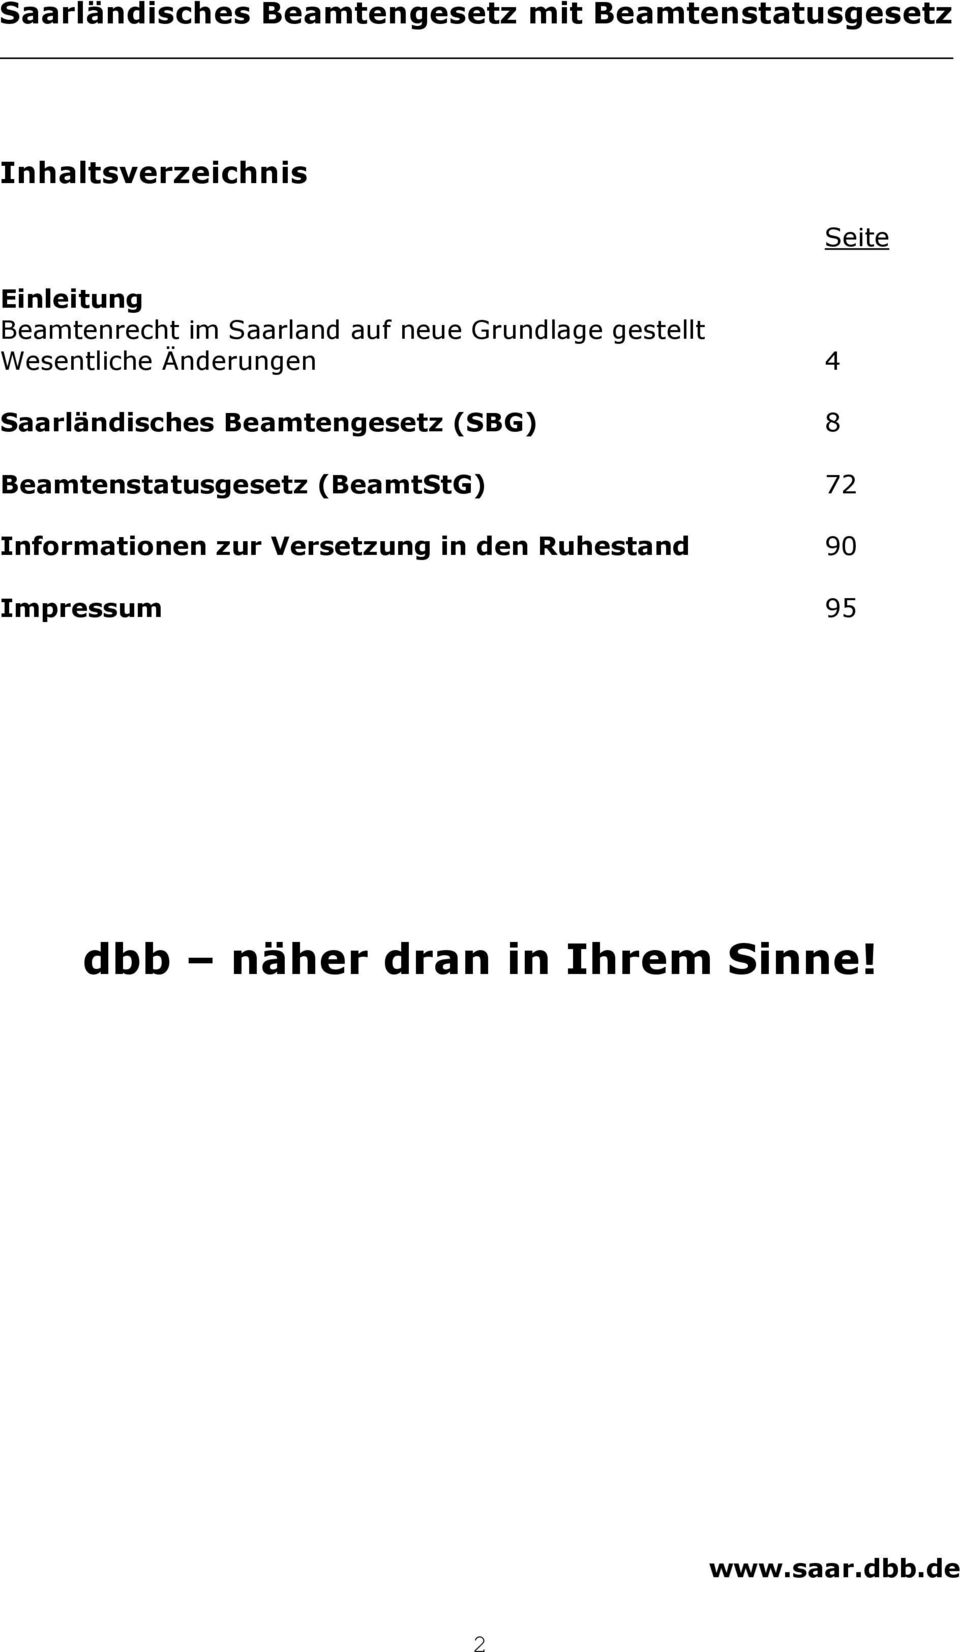 Saarländisches Beamtengesetz (SBG) 8 Beamtenstatusgesetz (BeamtStG) 72 Informationen